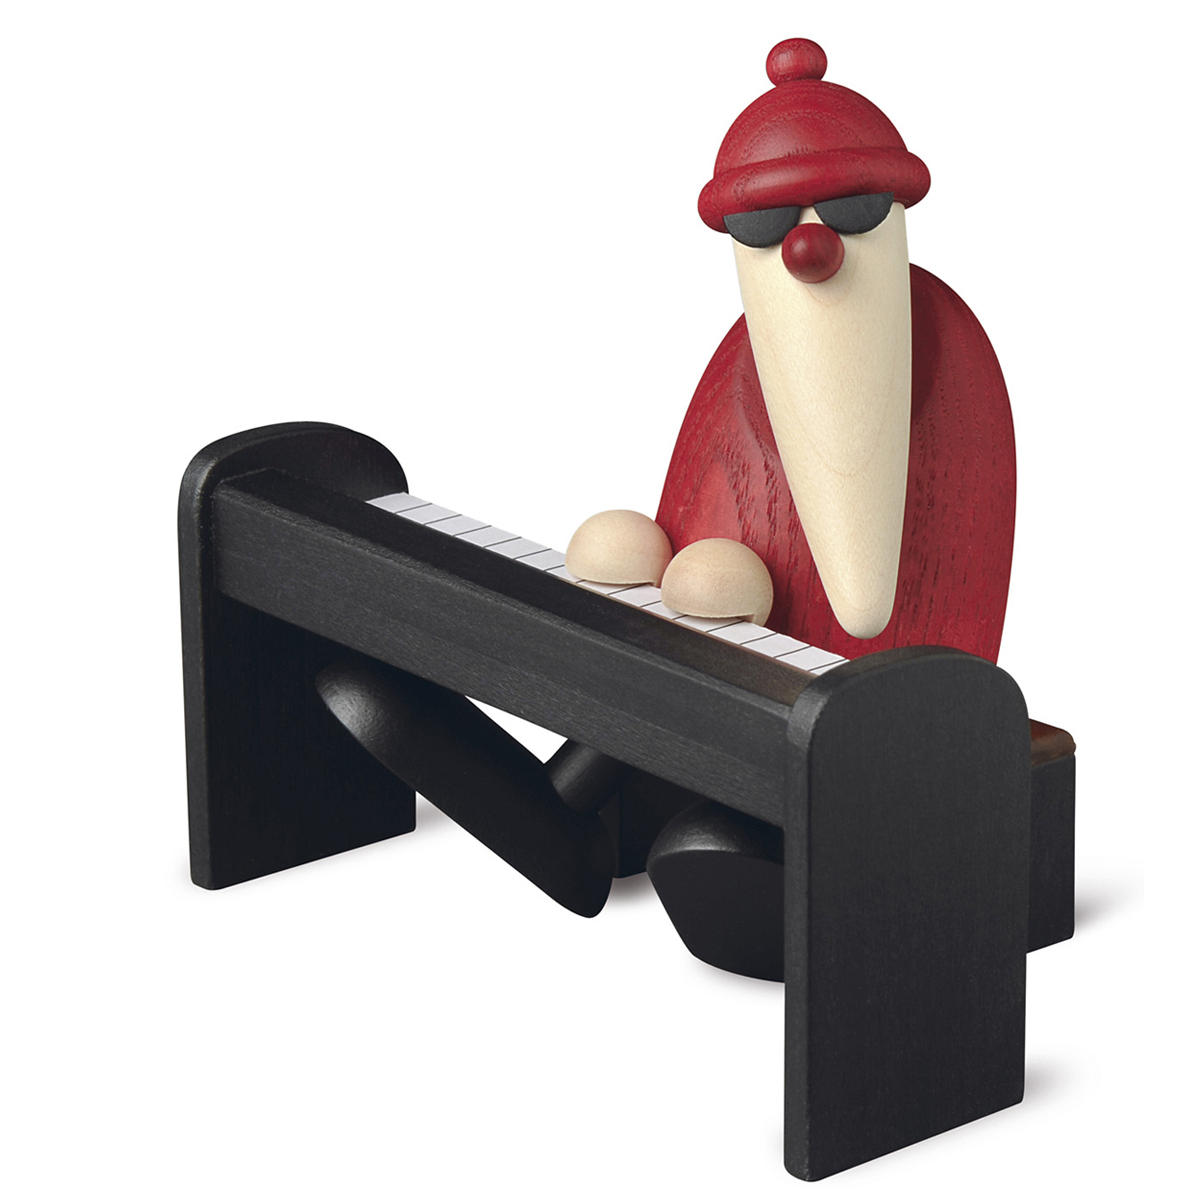 Santa Claus playing a black piano